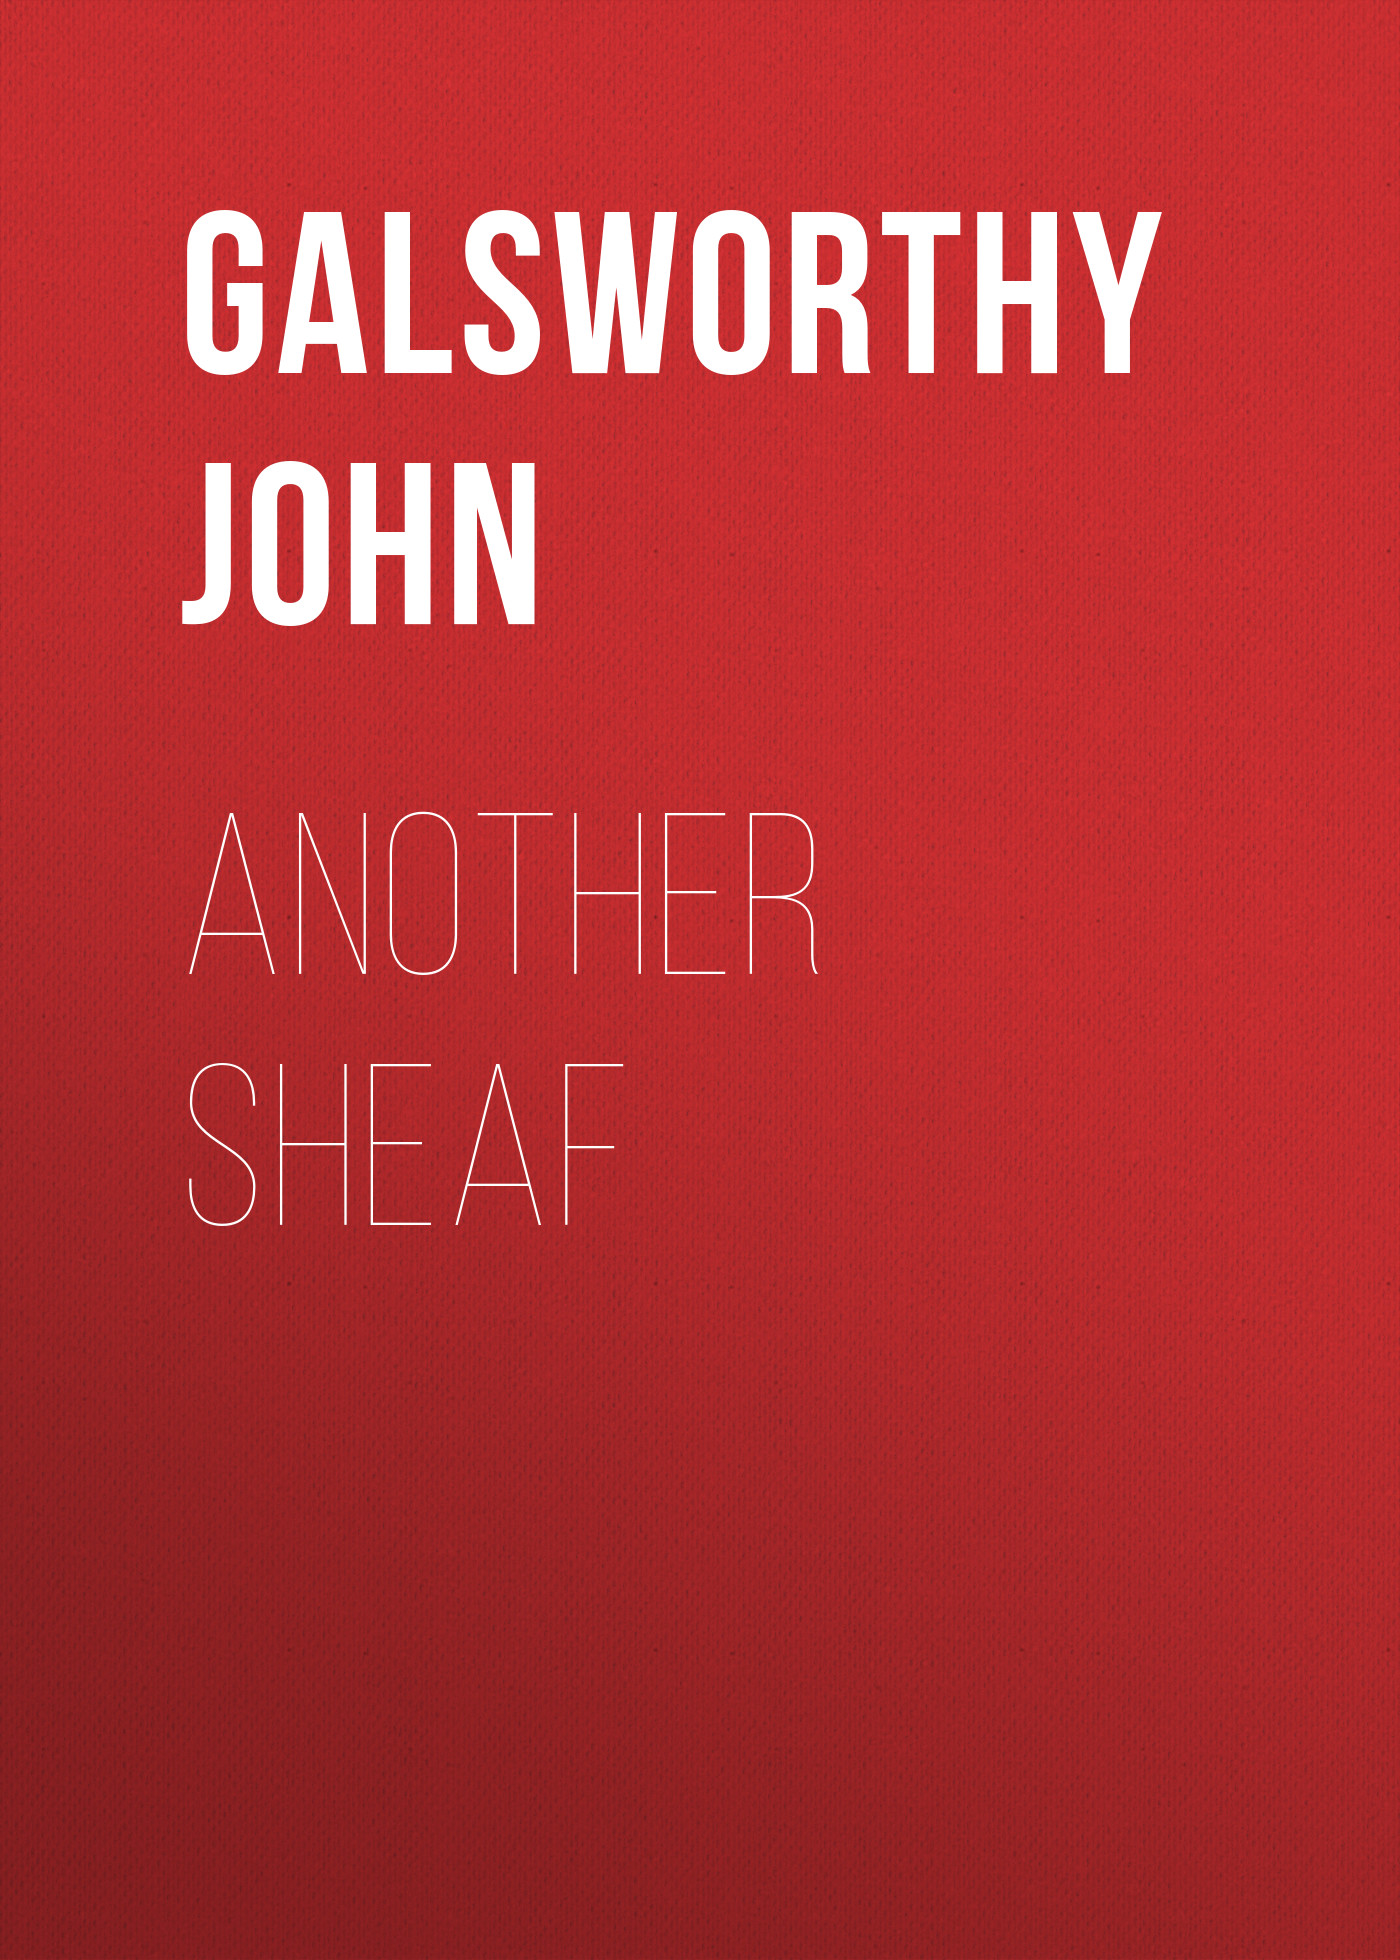 Книга Another Sheaf из серии , созданная John Galsworthy, может относится к жанру Зарубежная старинная литература, Зарубежная классика, Эссе. Стоимость электронной книги Another Sheaf с идентификатором 24859395 составляет 0 руб.